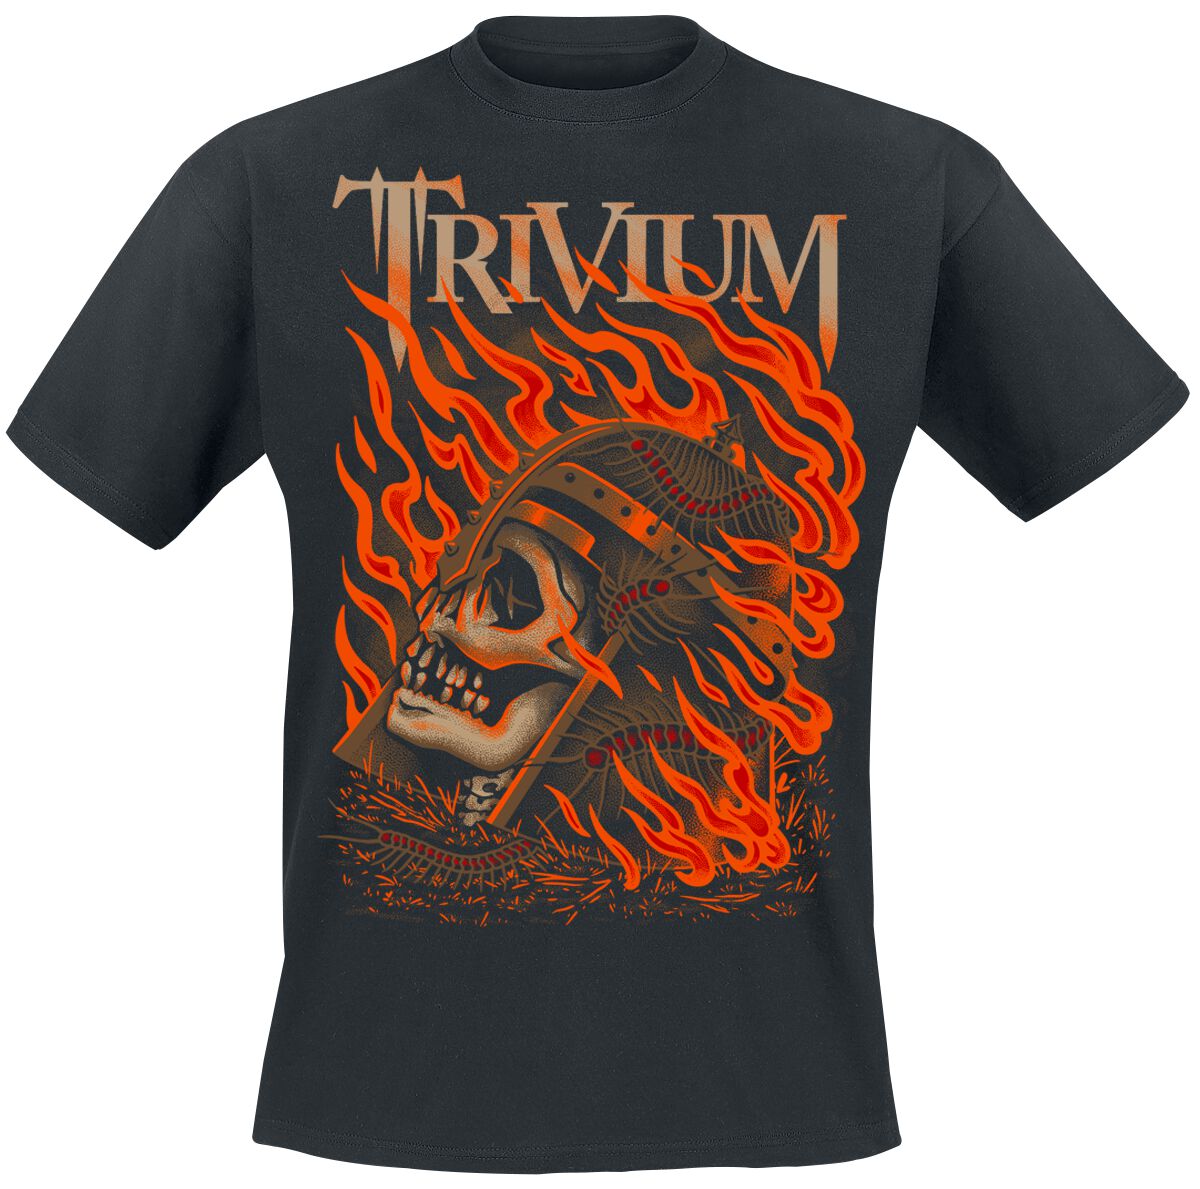 Trivium T-Shirt - Clark Or Flaming Skull - S bis XXL - für Männer - Größe XL - schwarz  - EMP exklusives Merchandise!